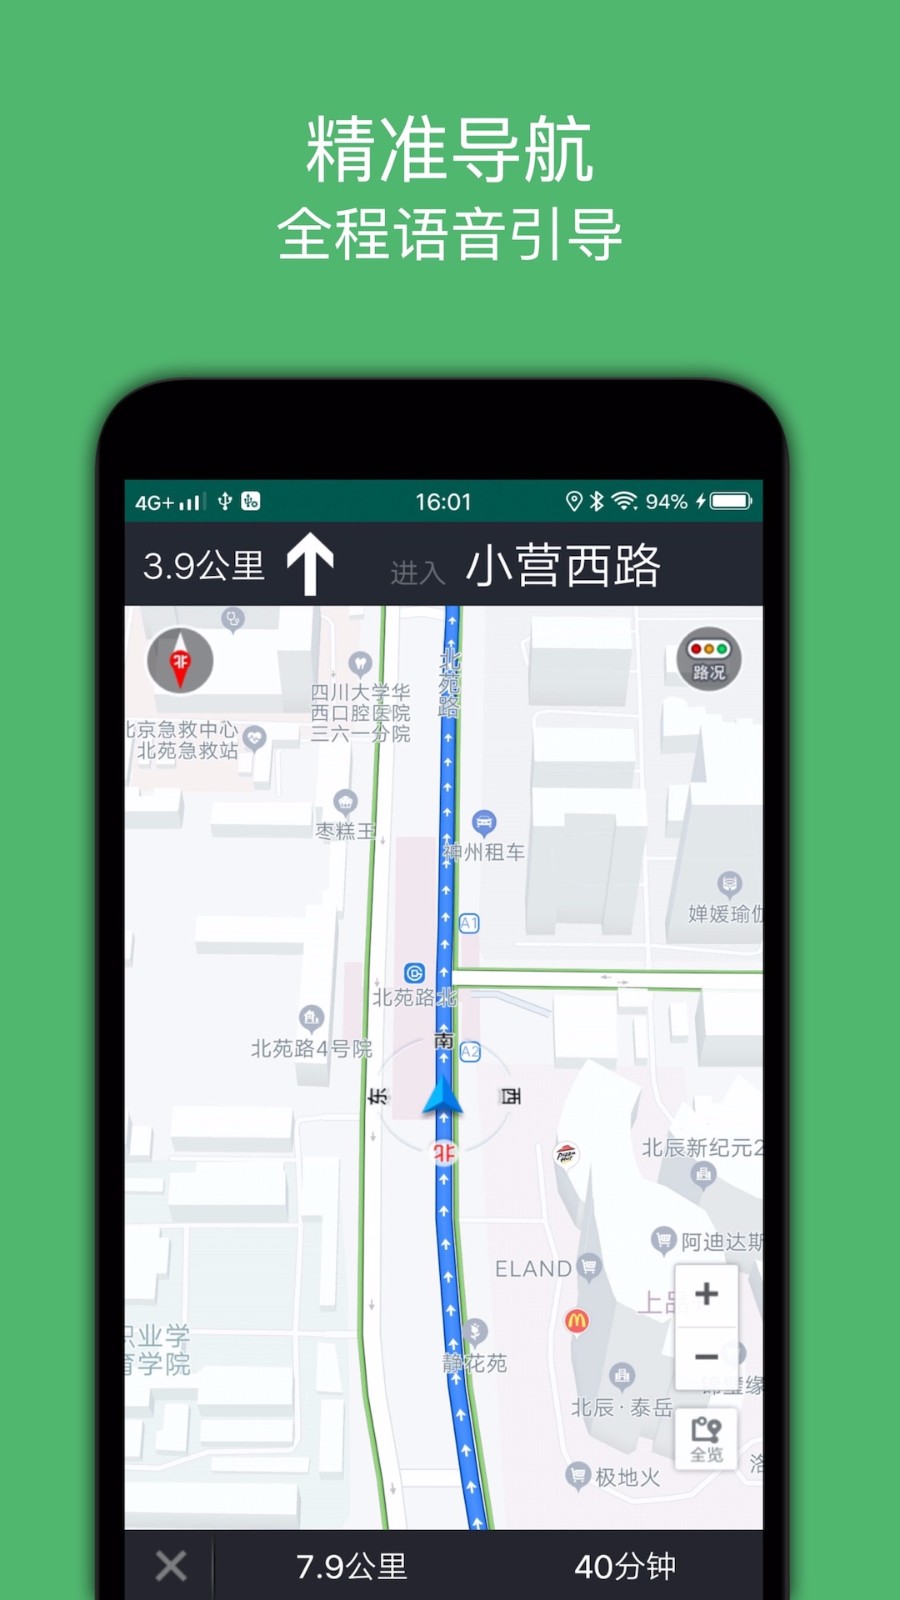 骑行导航北京多用户商城app开发